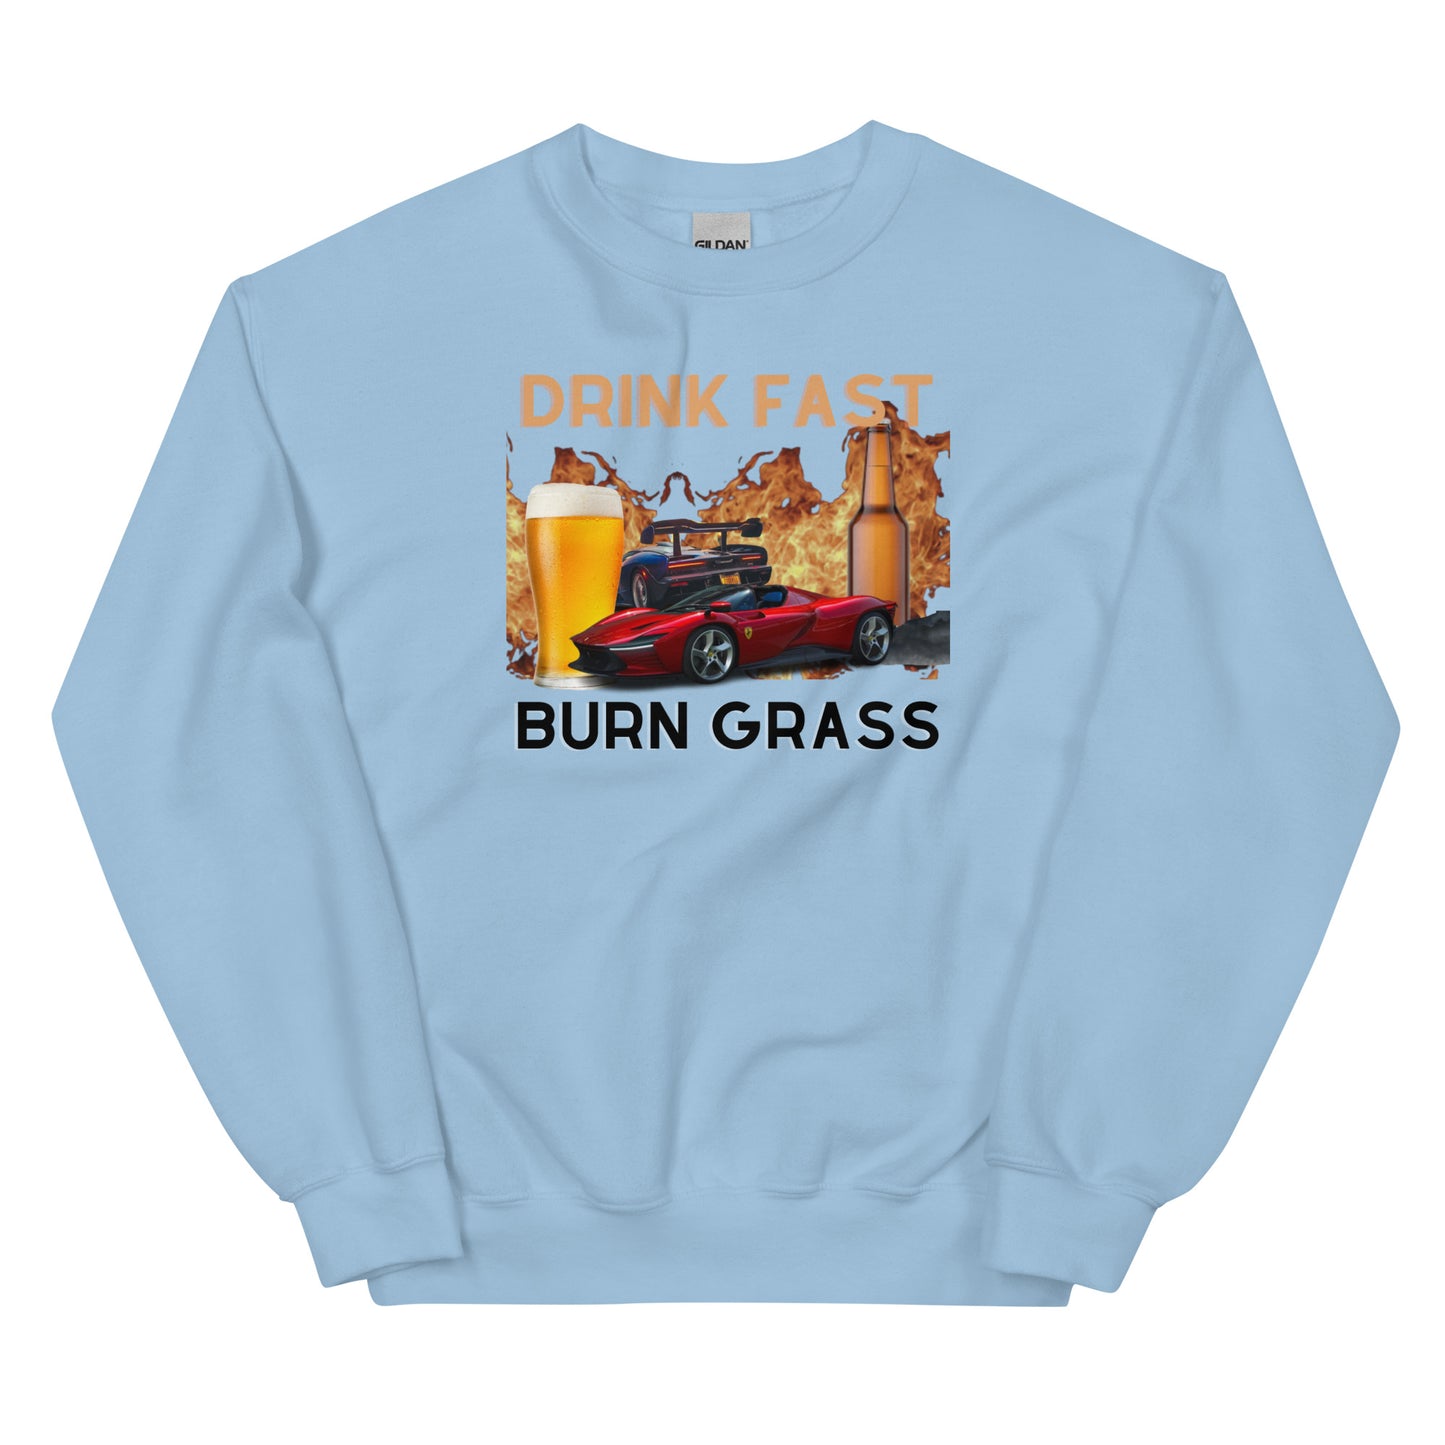 DRINK FAST BURN GRASS